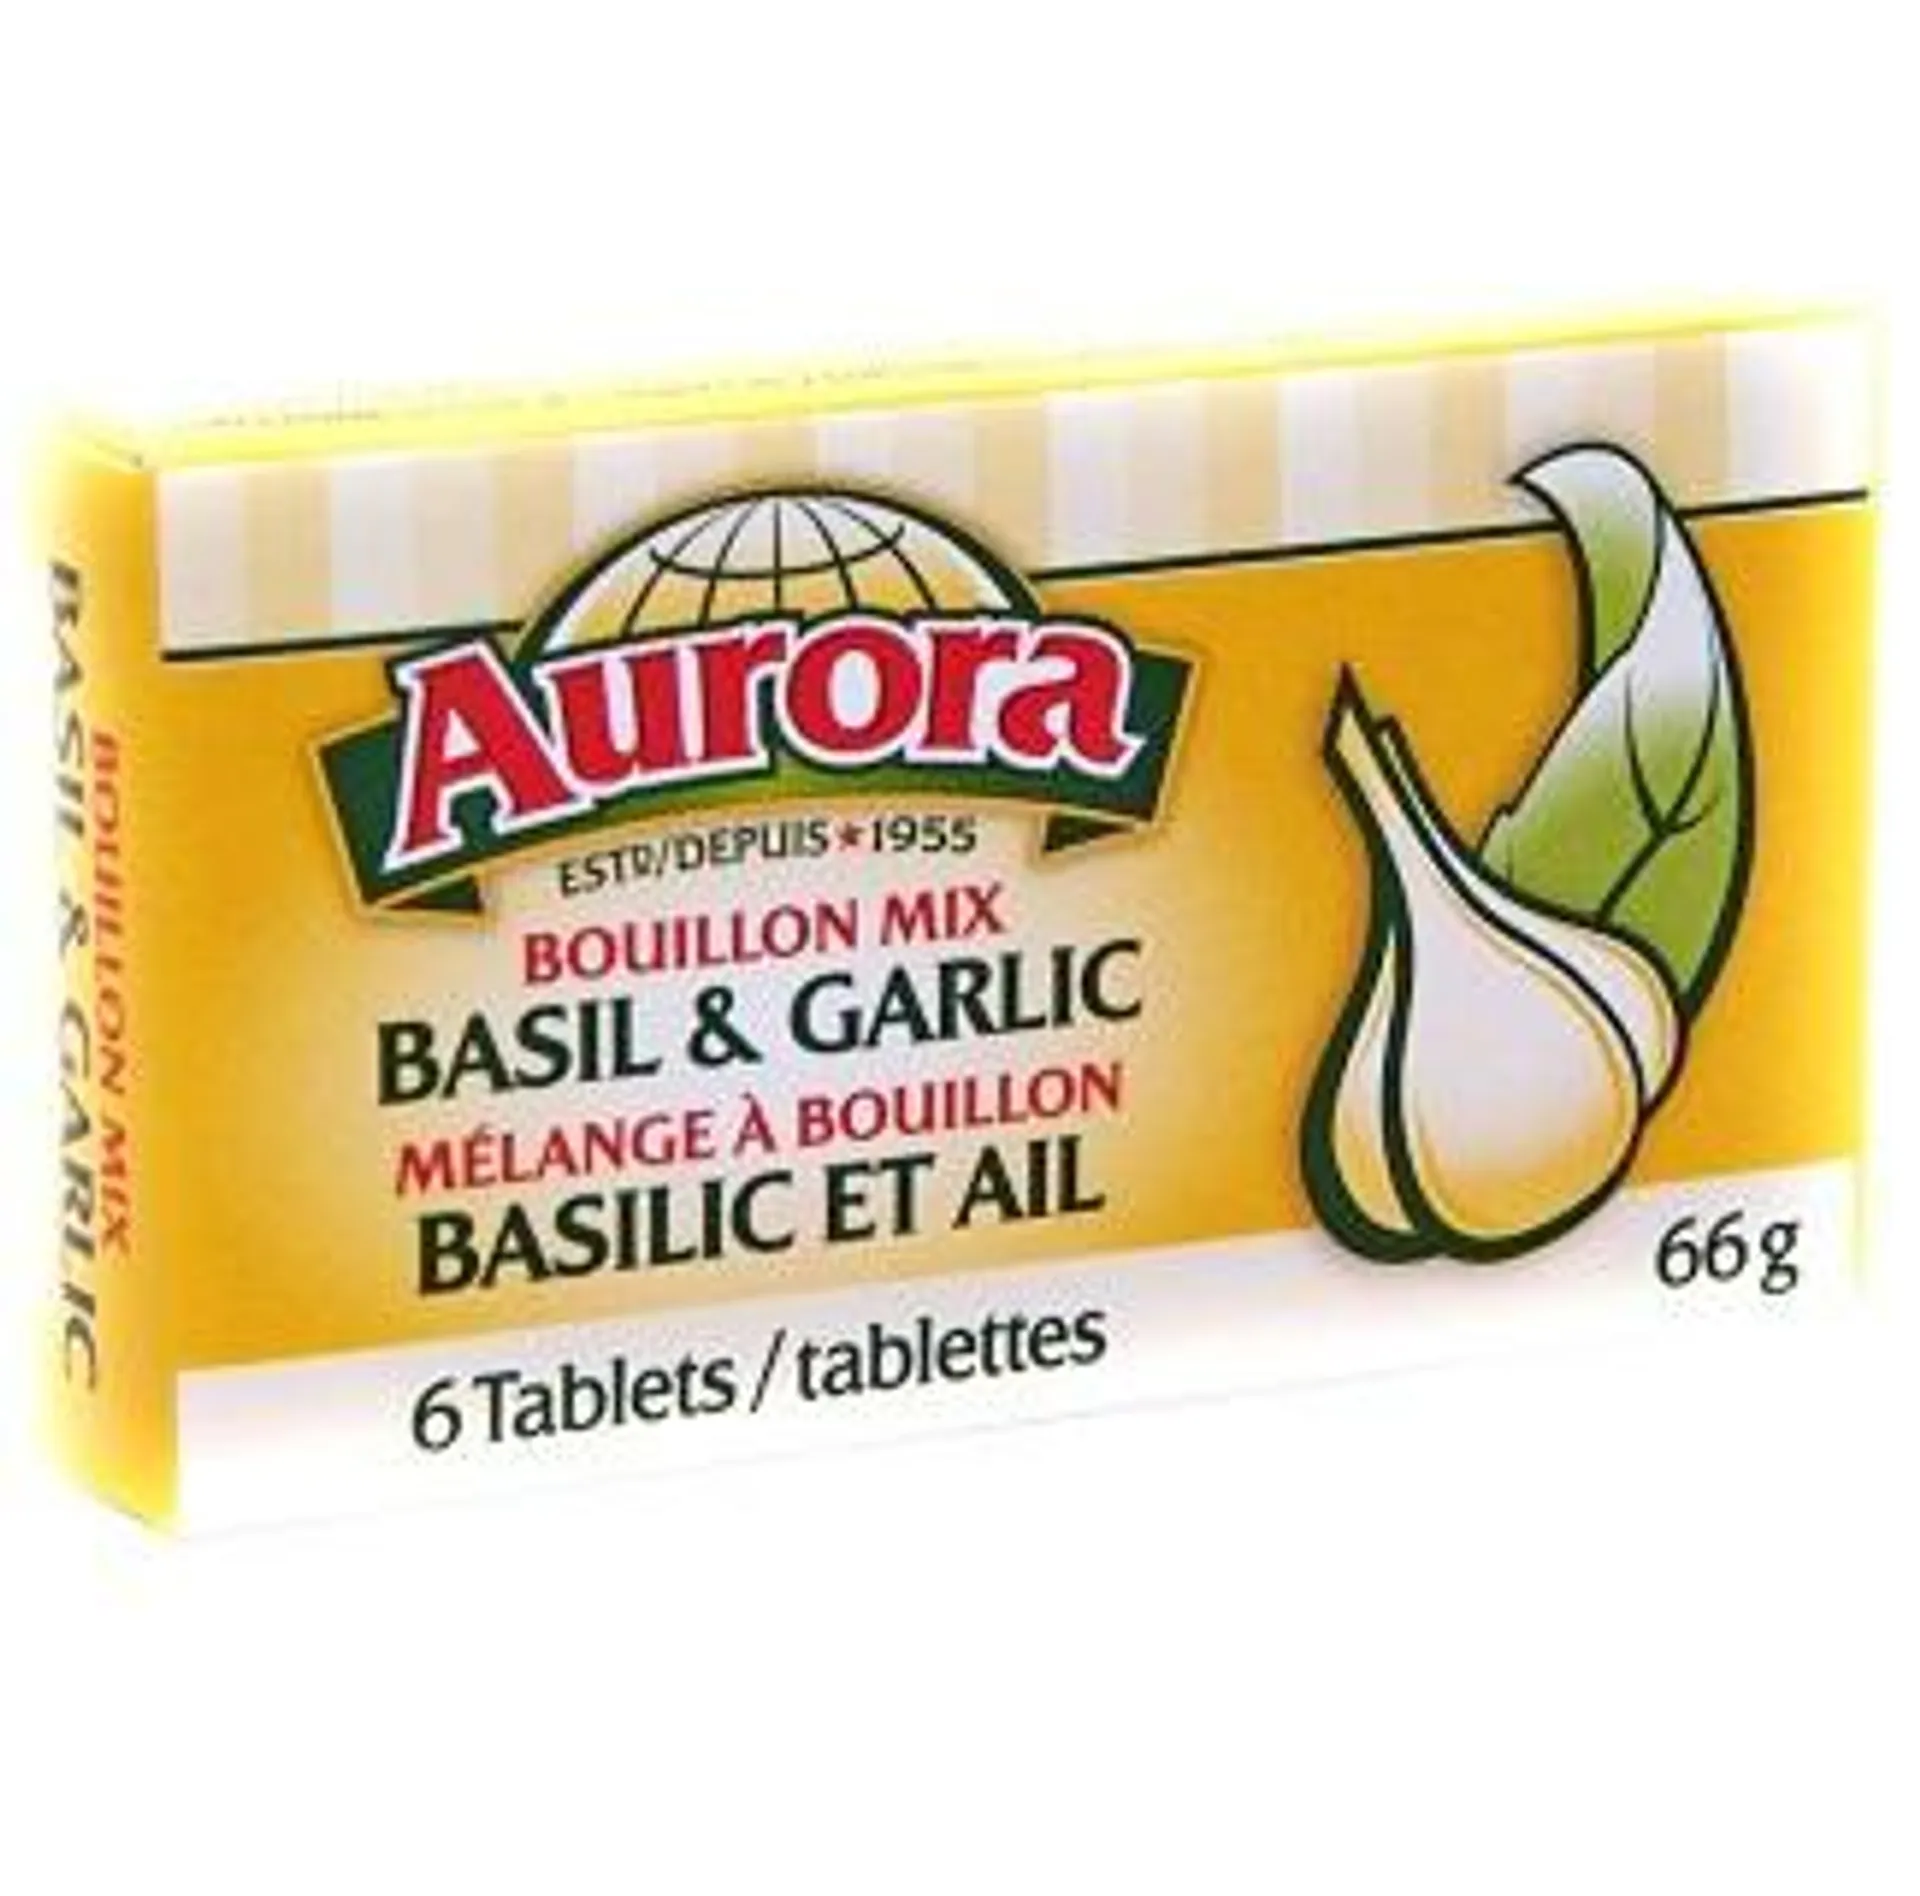 Aurora bouillon cube (basil garlic) - 66g